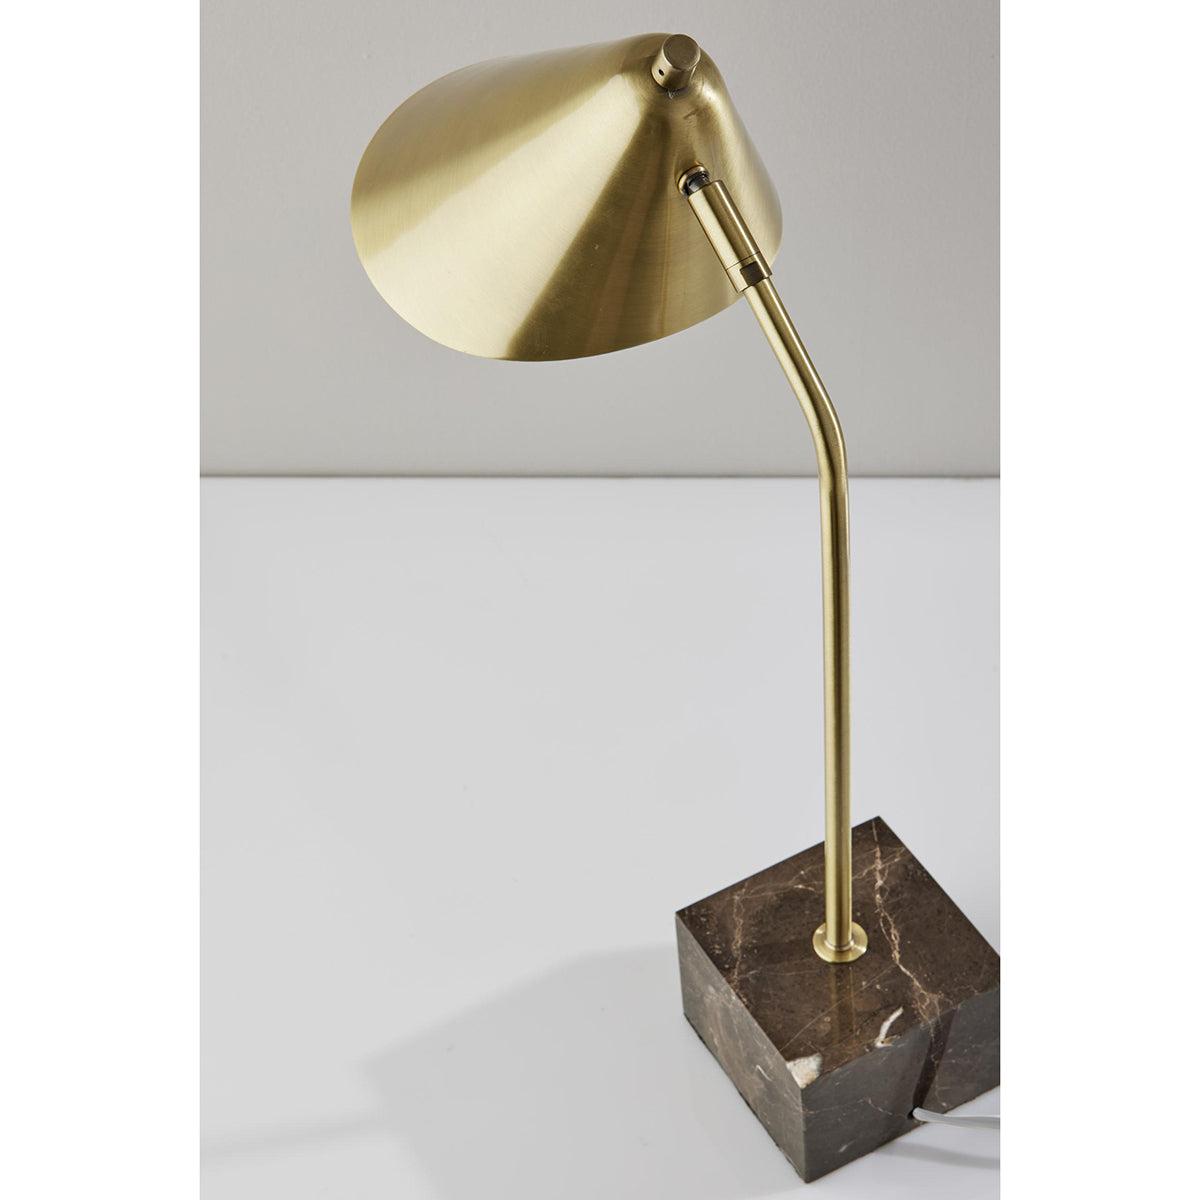 Hawthorne Desk Lamp